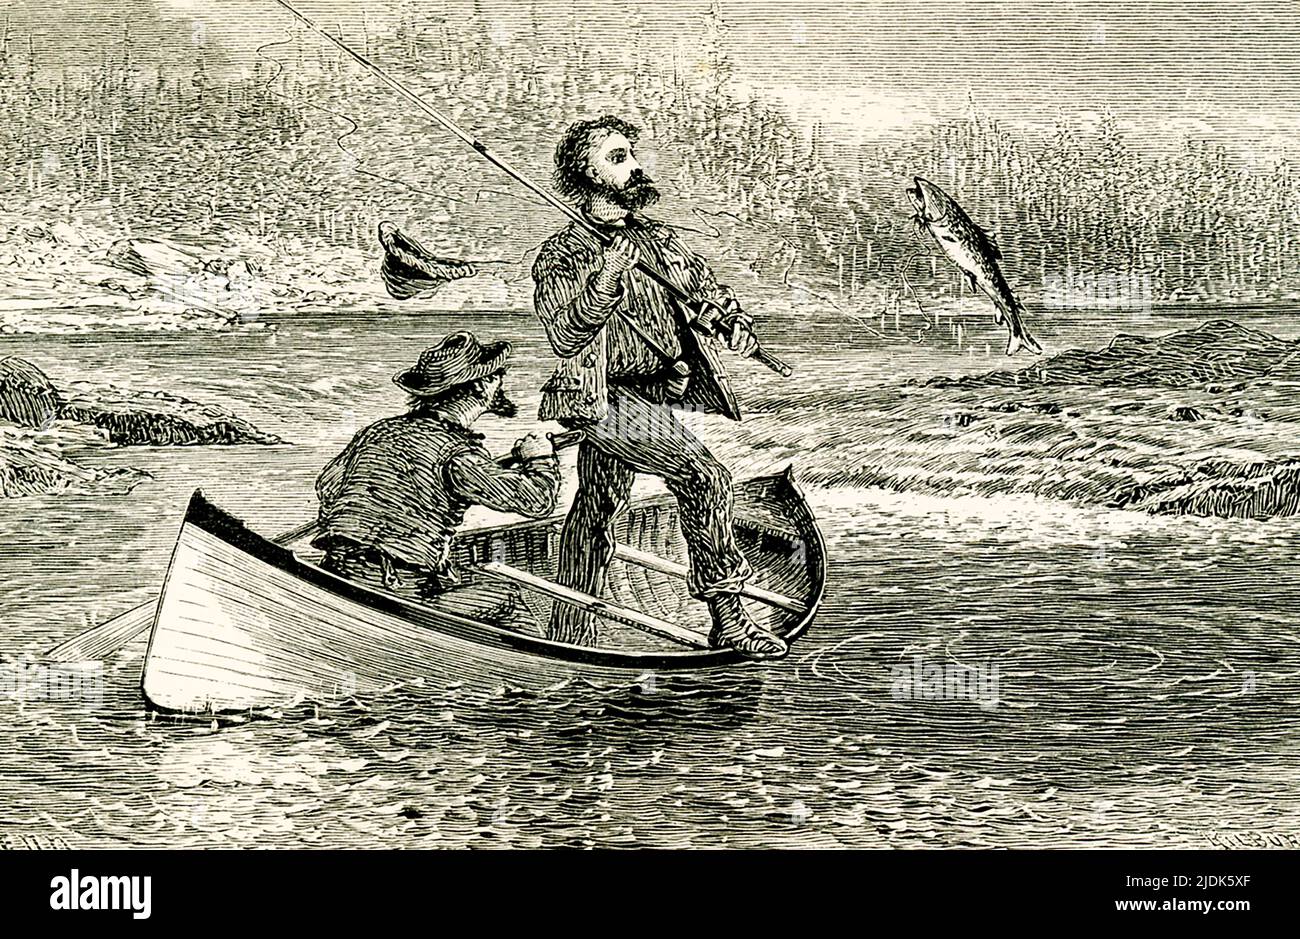 Die 1869-Legende lautet: „Als er sich hoch in der Luft schüttelte, wurden mir die Kristalltropfen ins Gesicht geschleudert.“ Die Szene zeigt zwei Männer in einem Boot, die in den Adirondacks fischen. Stockfoto